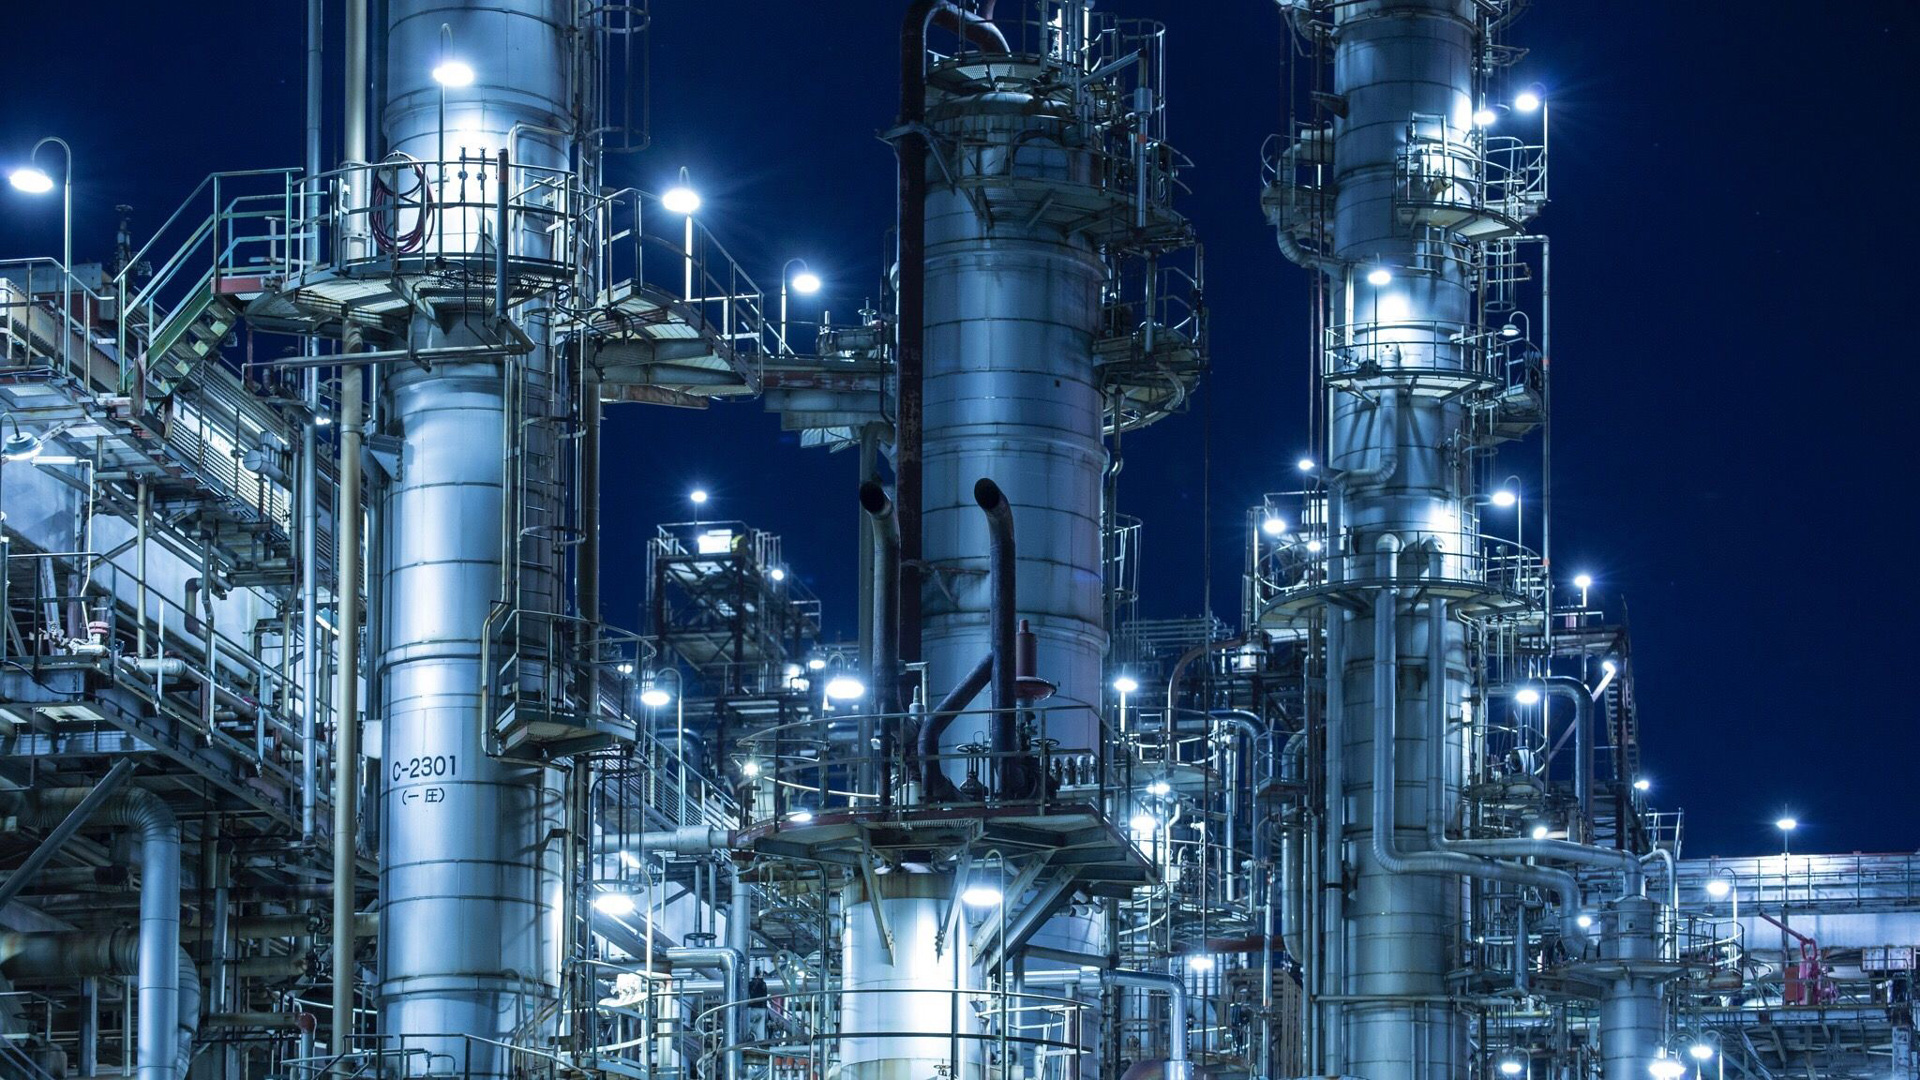 verzekering Verouderd Afscheiden MAN Energy Solutions for the refinery industry